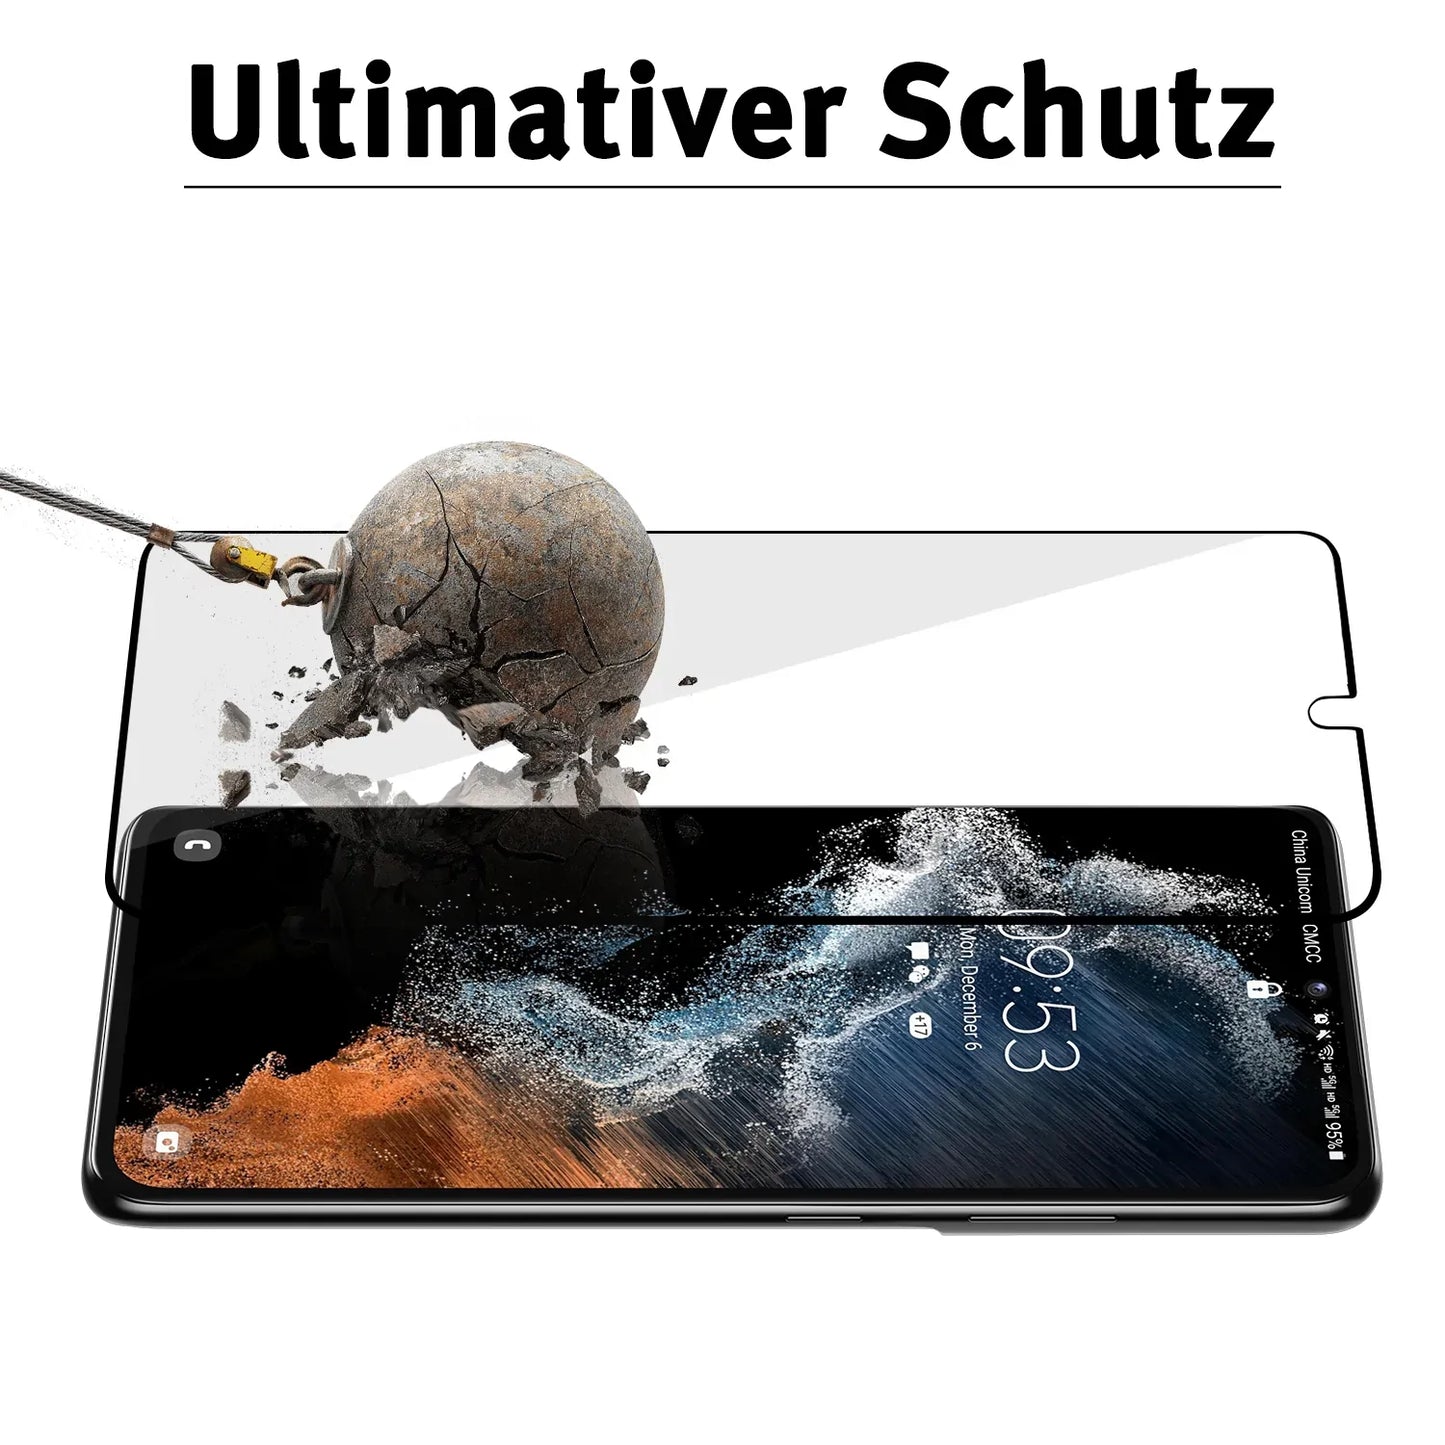 ArktisPRO Samsung Galaxy S23 Plus FULL COVER Displayschutz GLAS - hüllenfreundlich